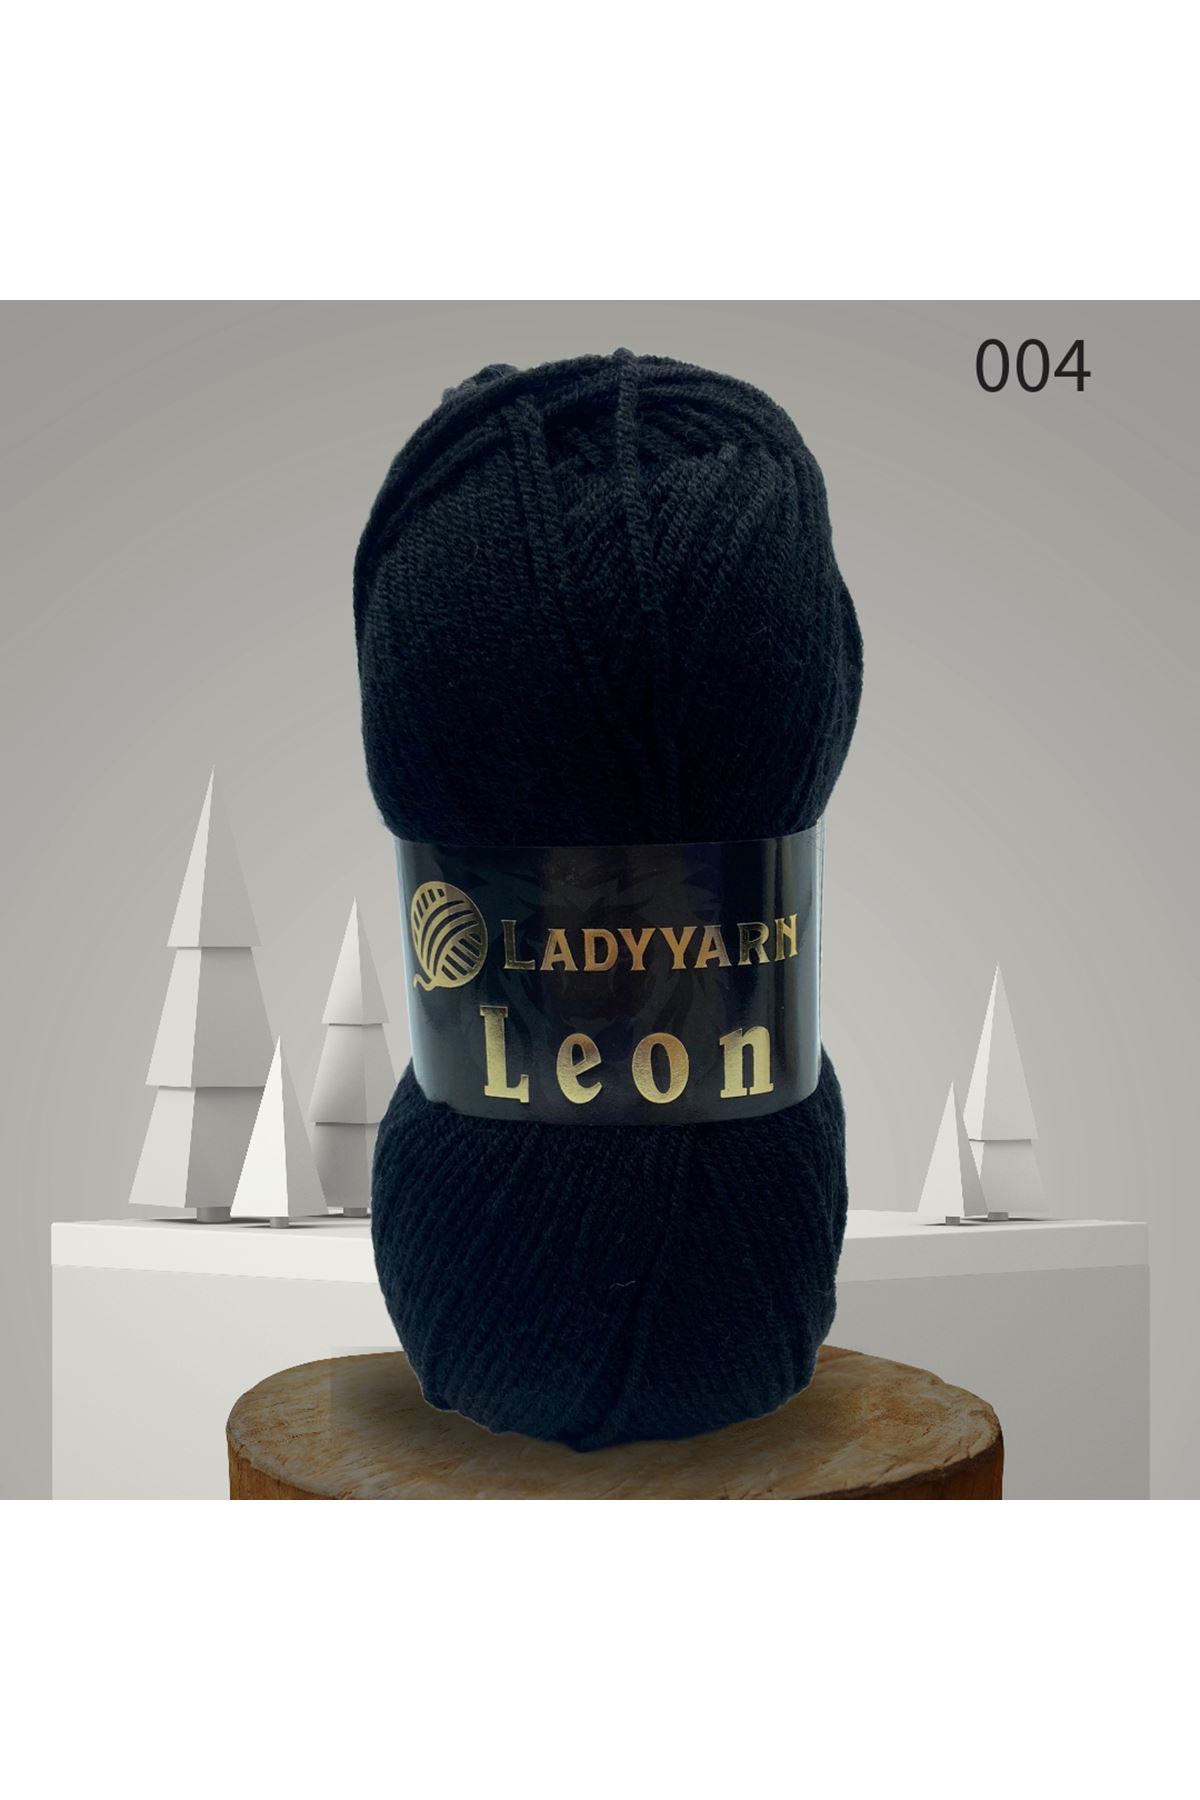 Lady Yarn Leon %49 Yünlü 004 Siyah